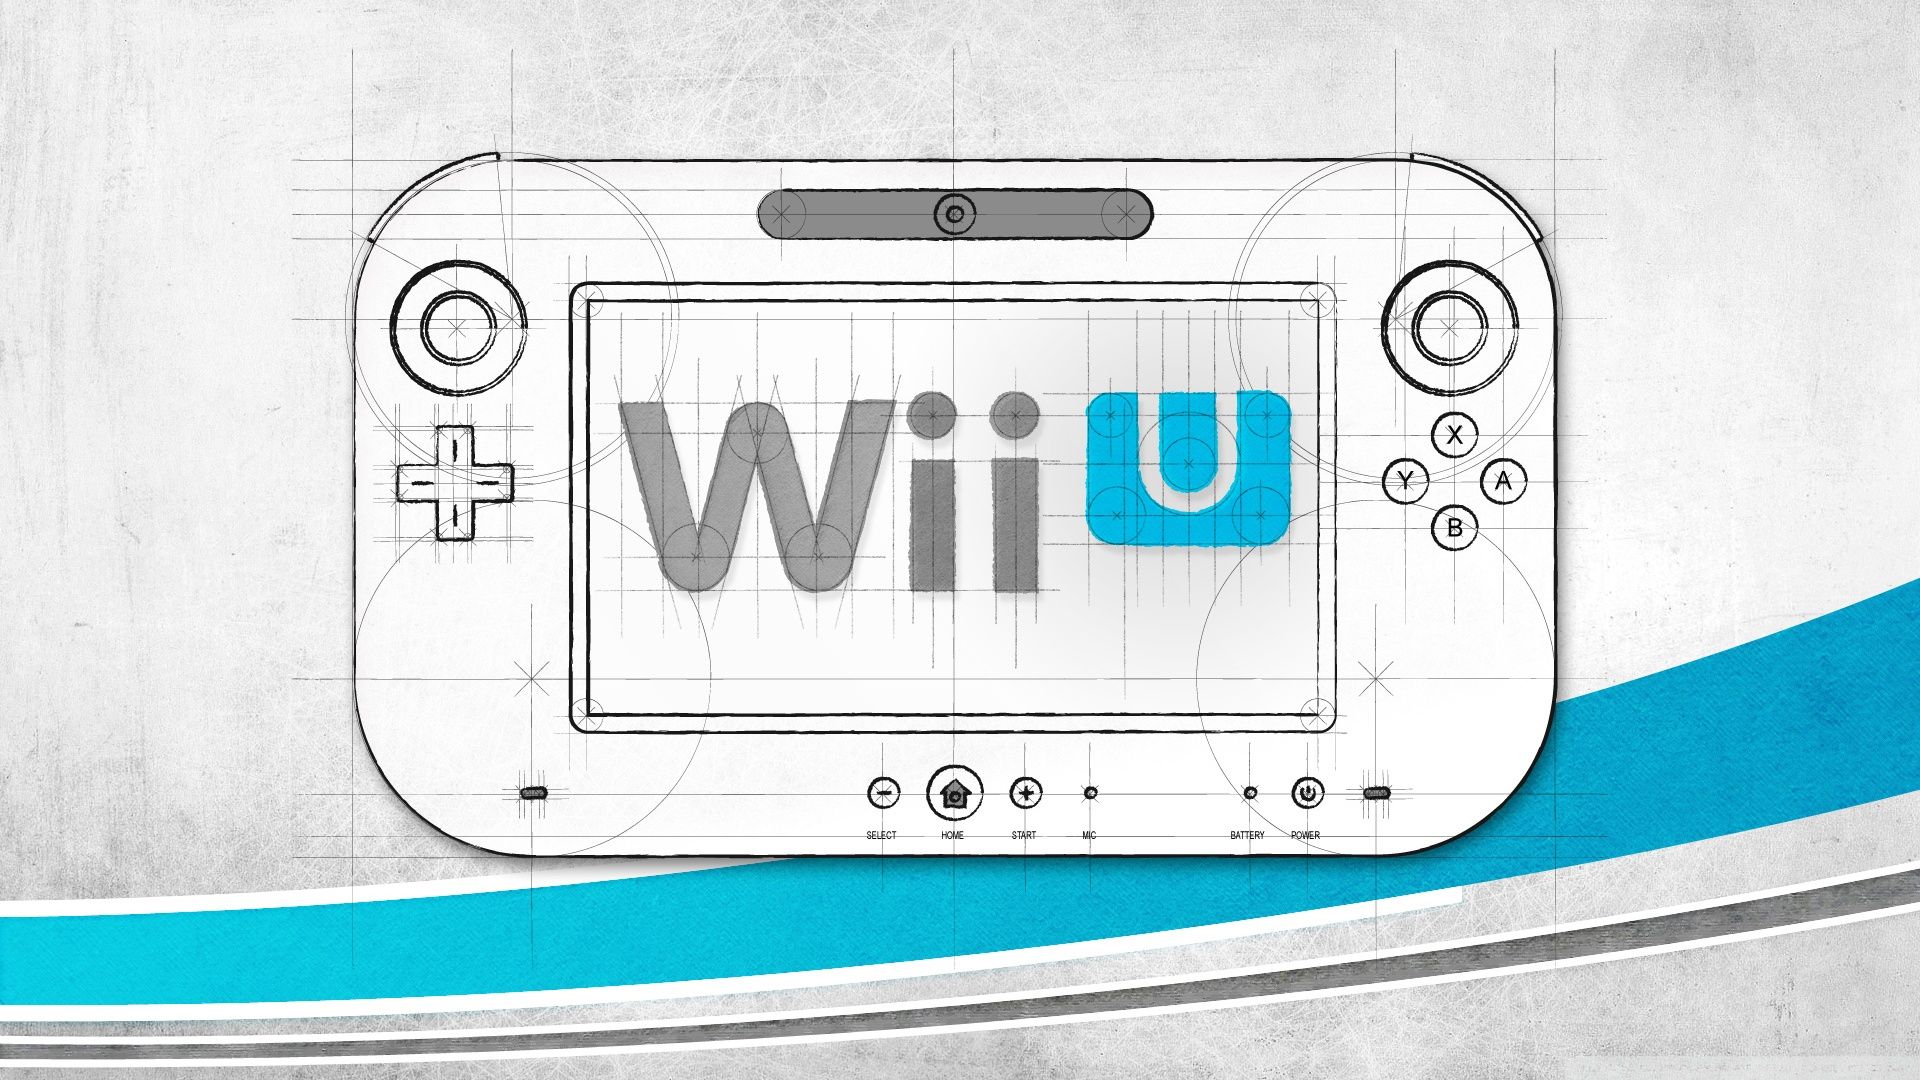 Zelda Wii U Wallpapers